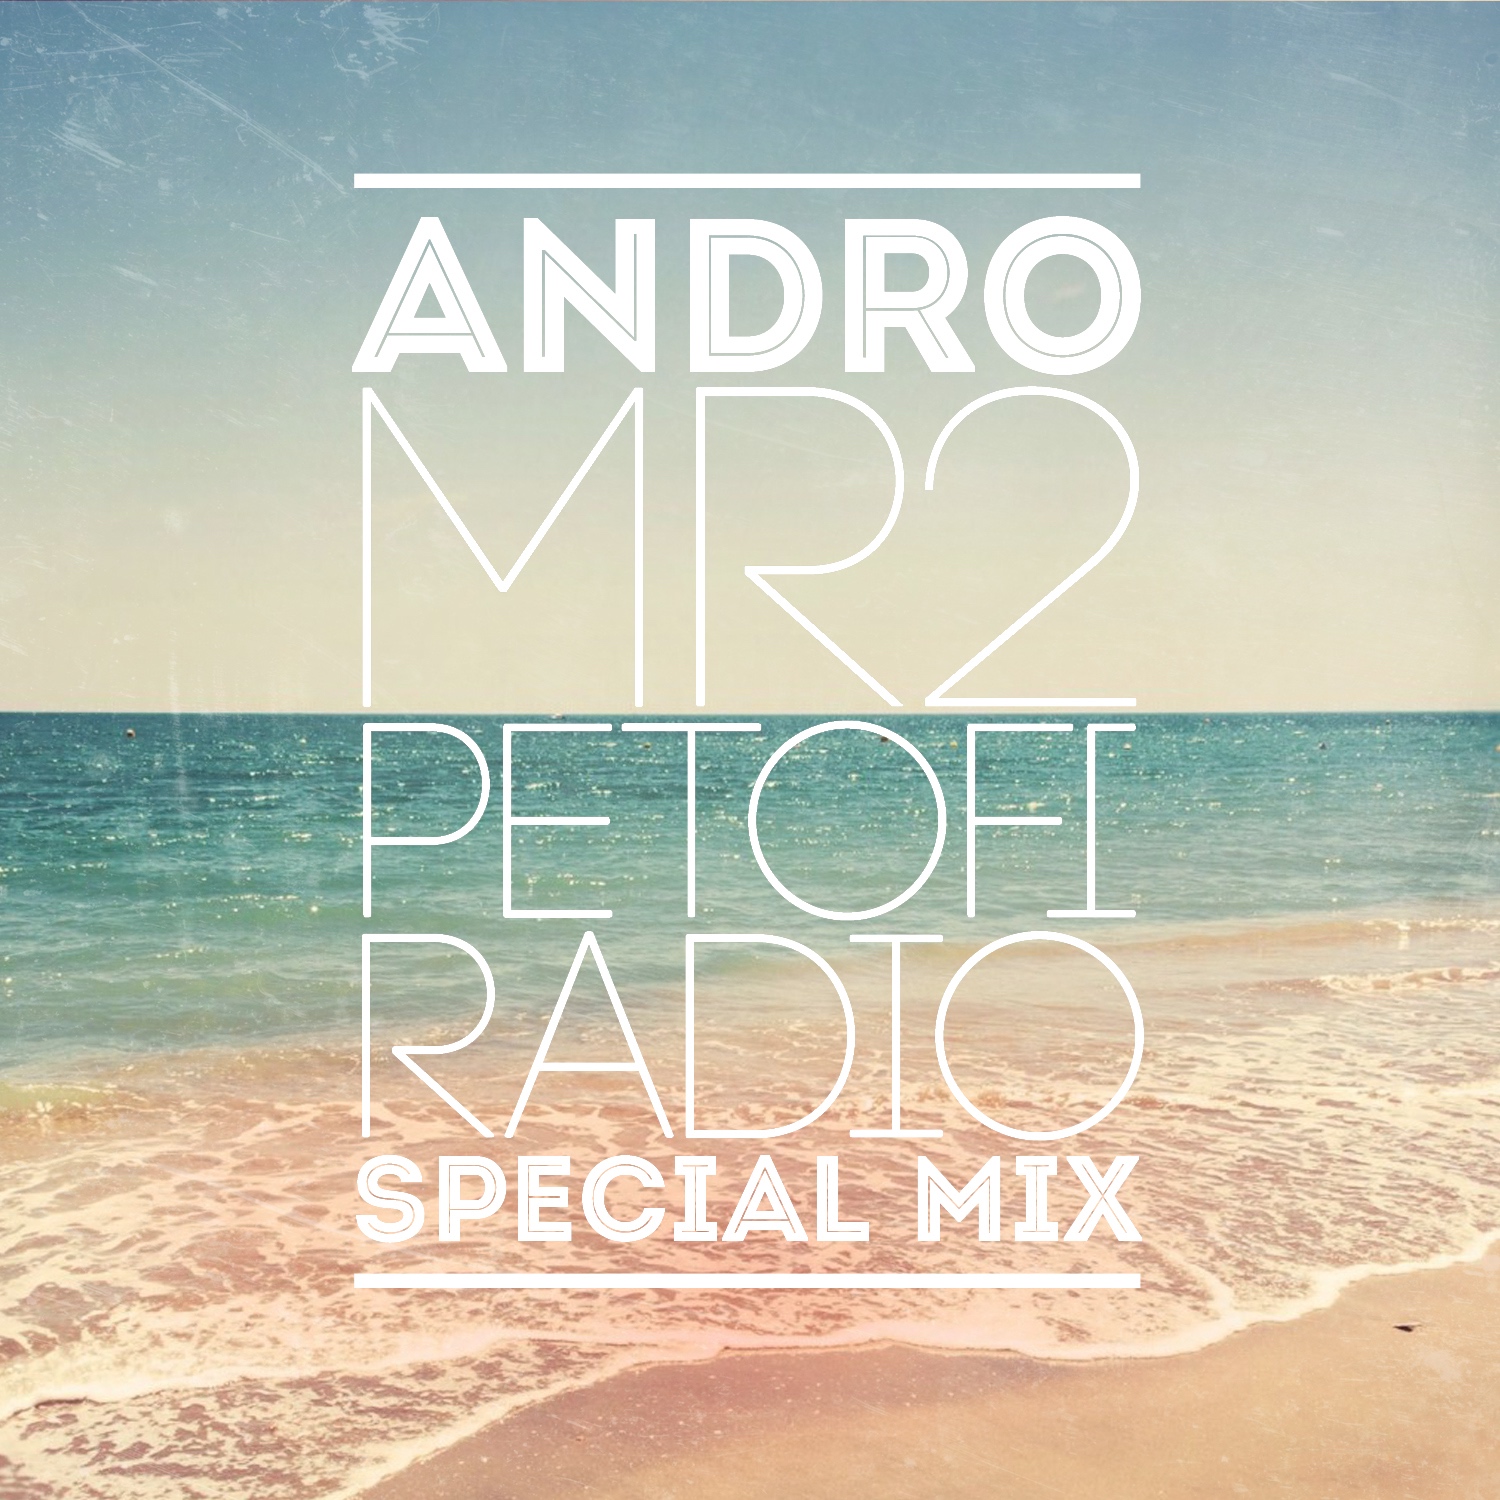 MR2 Petofi Radio Special Mix (2013)